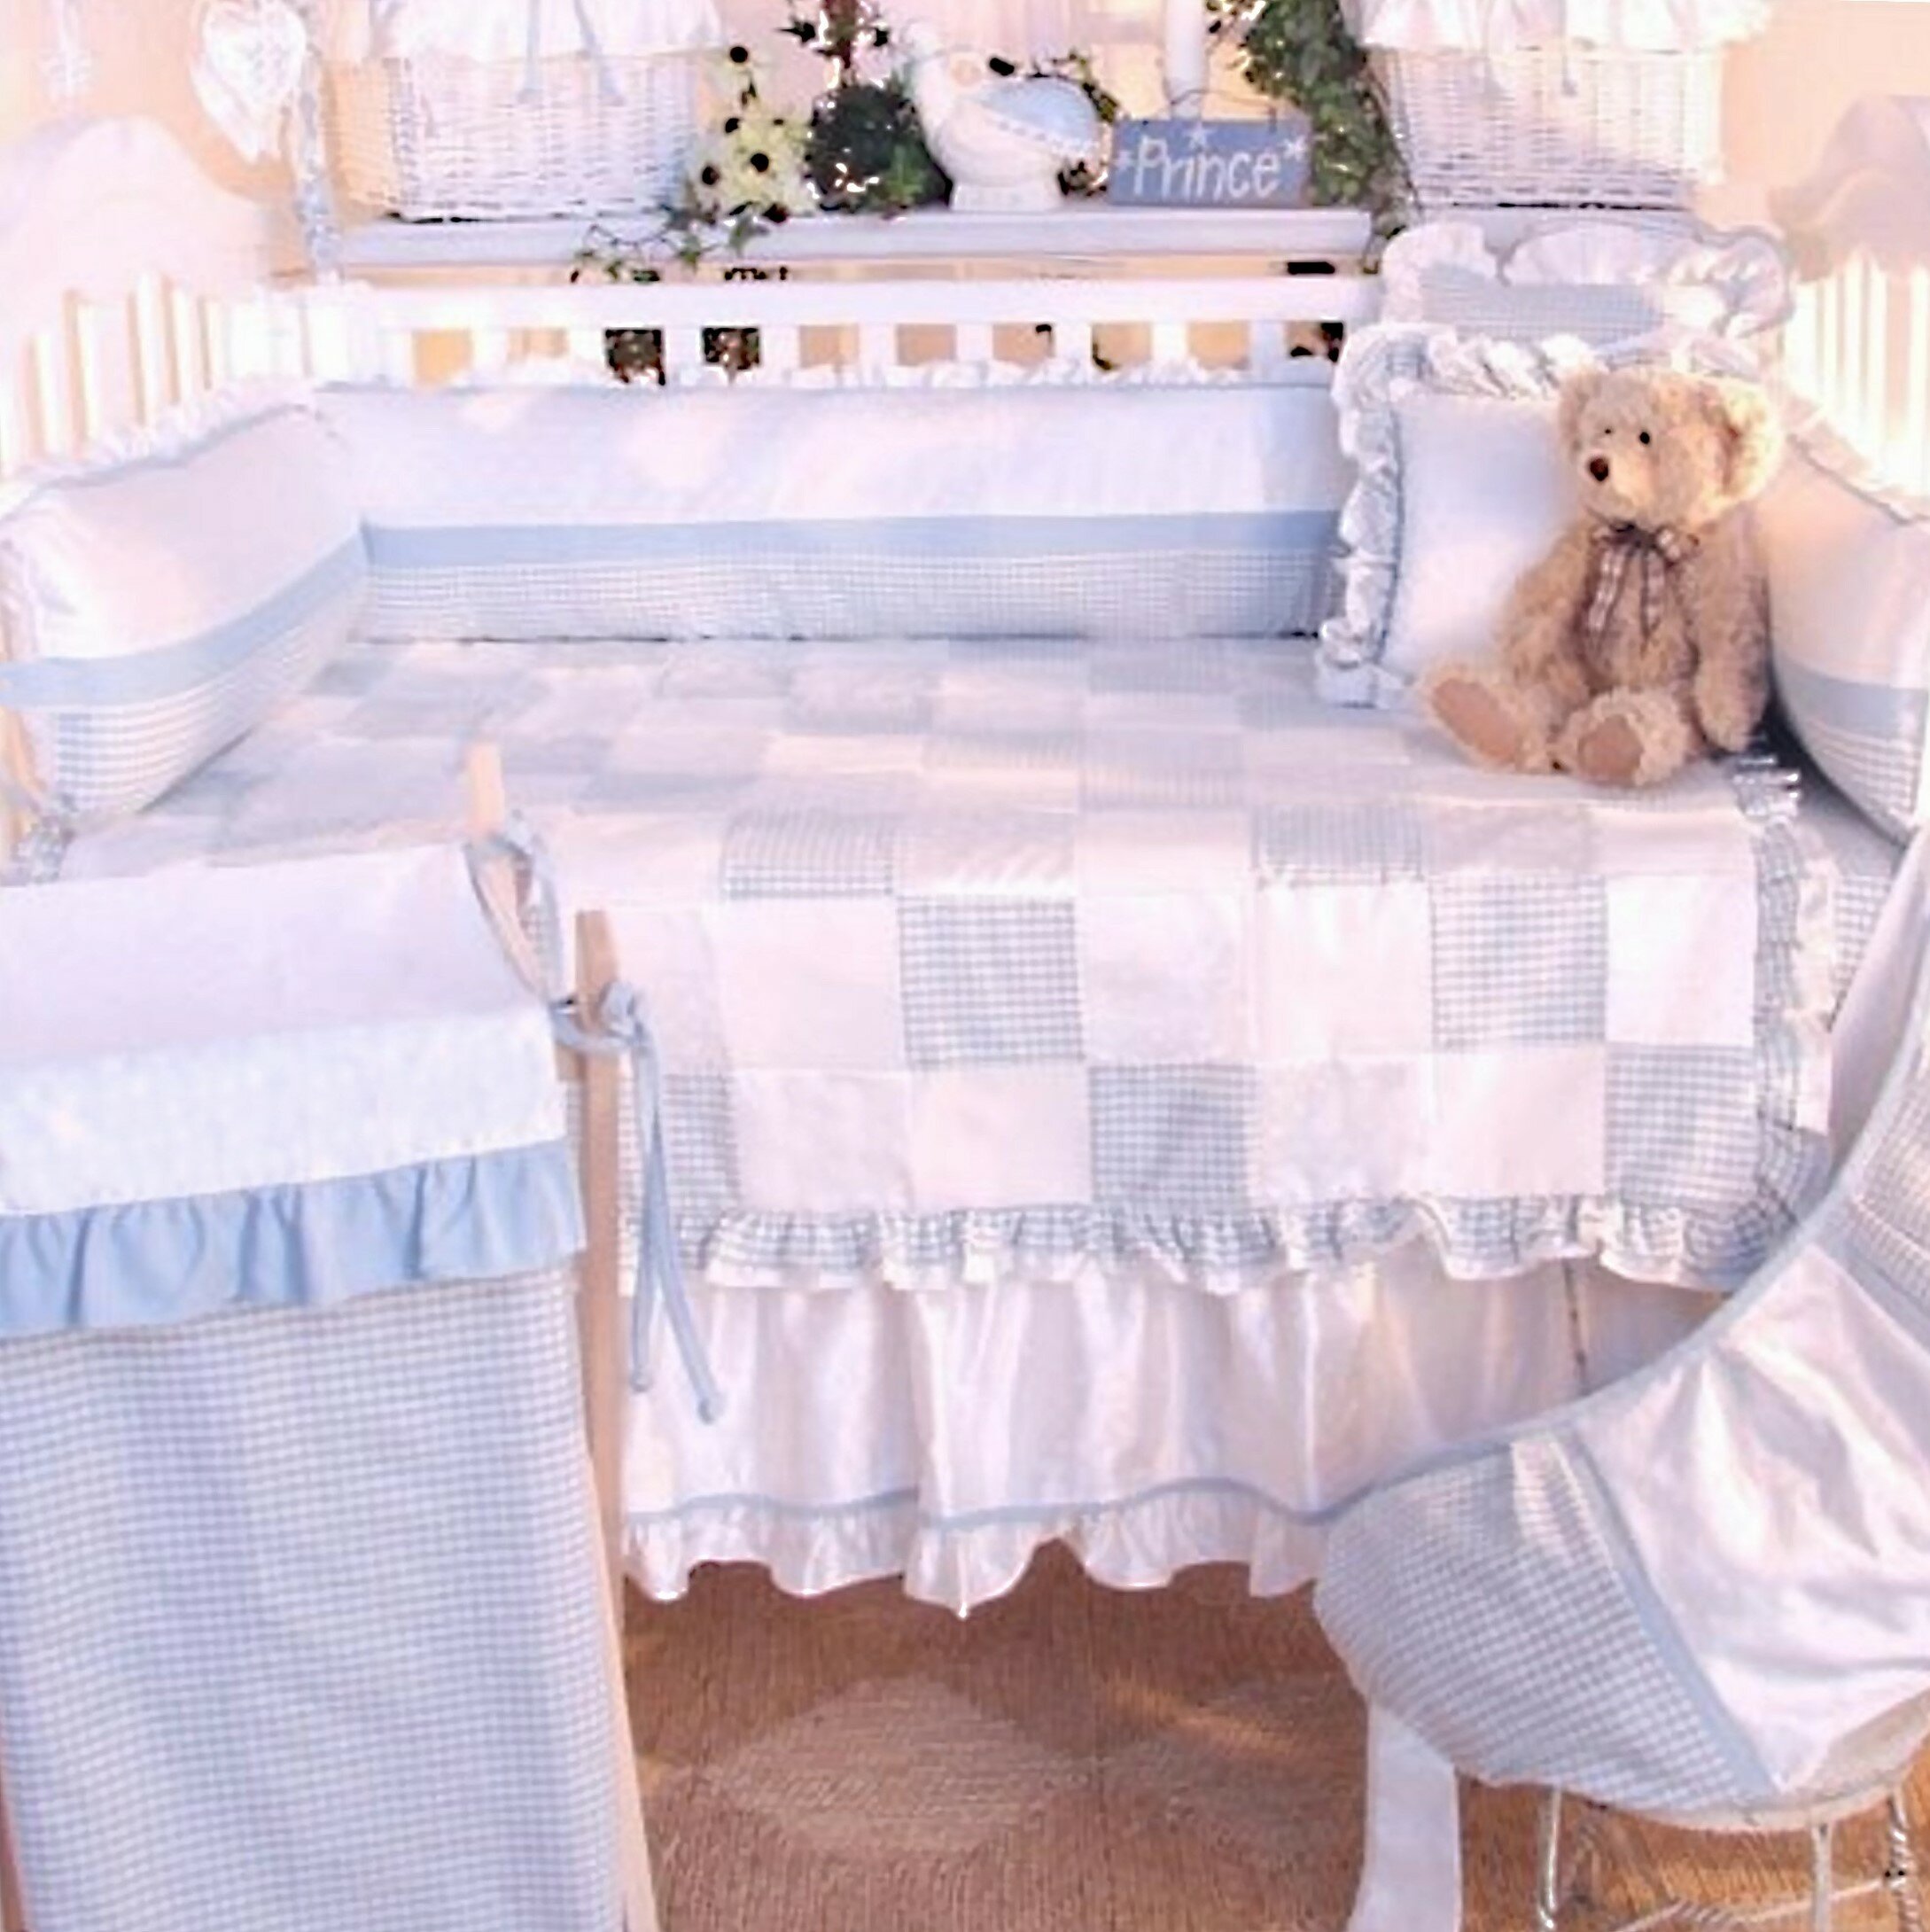 prince crib bedding